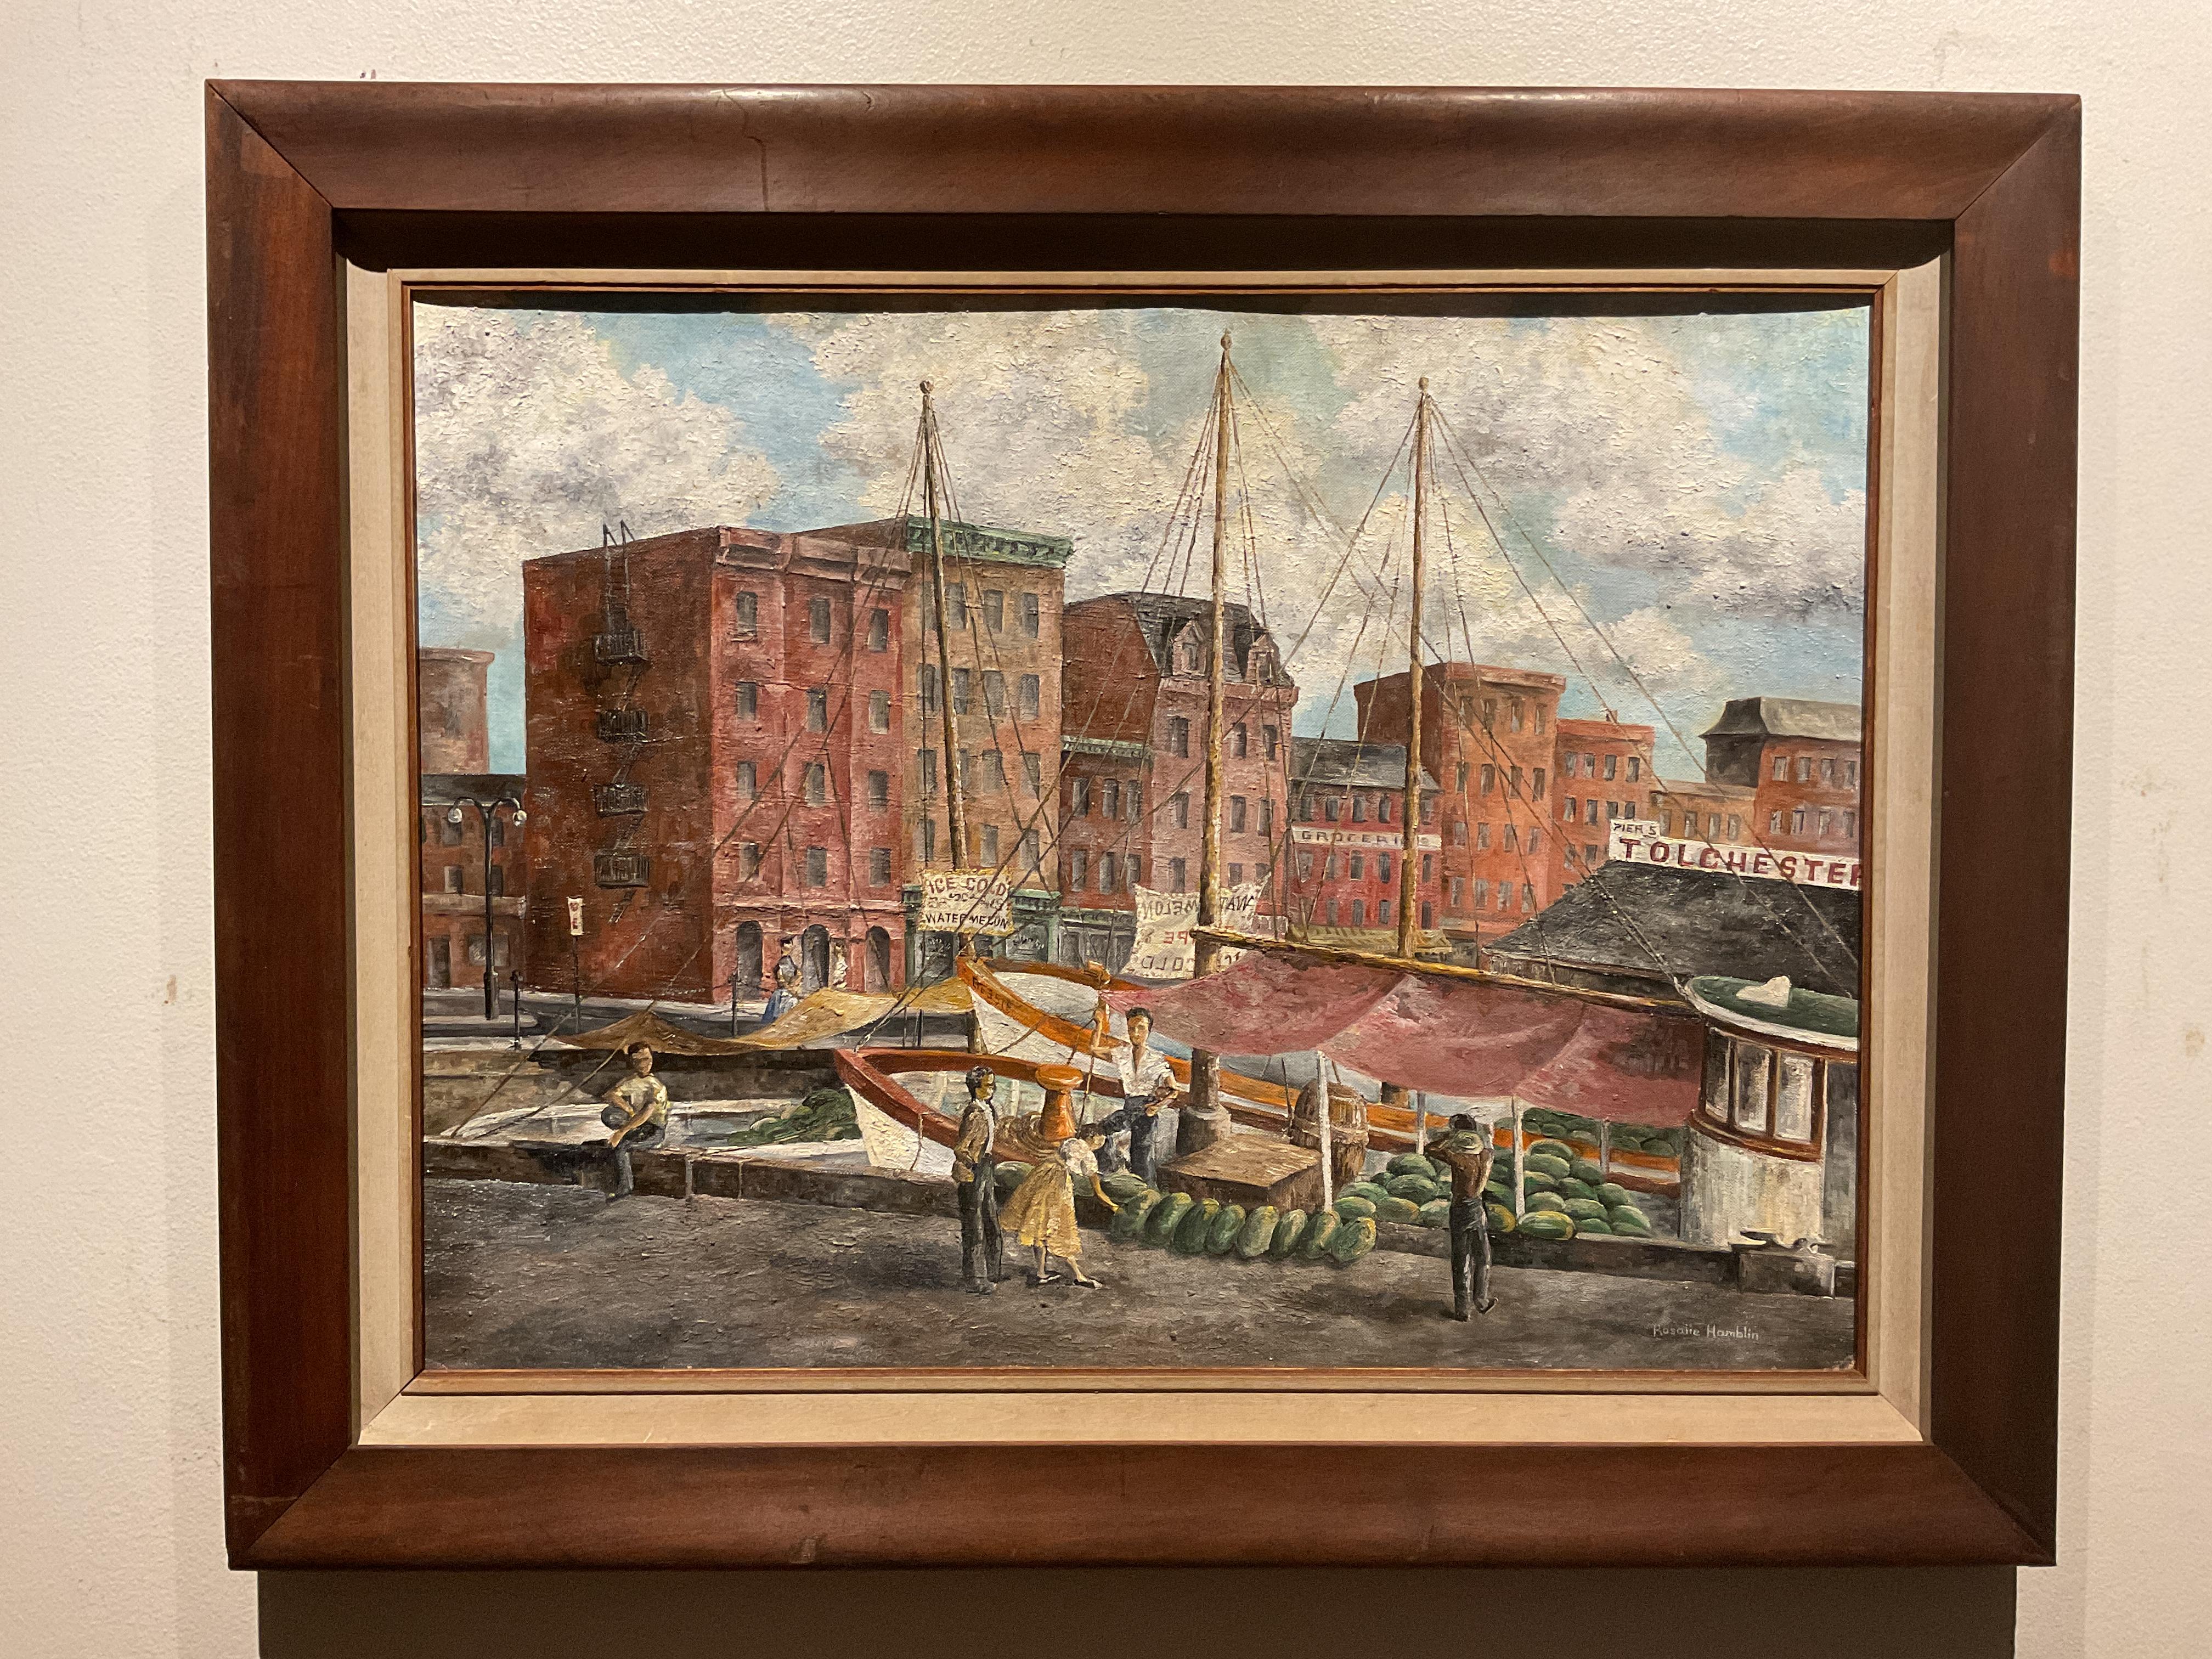 Seltenes Ölgemälde des Hafens von Baltimore, Pratt Street Dock, ca. 1950, Rosalie Hamblin